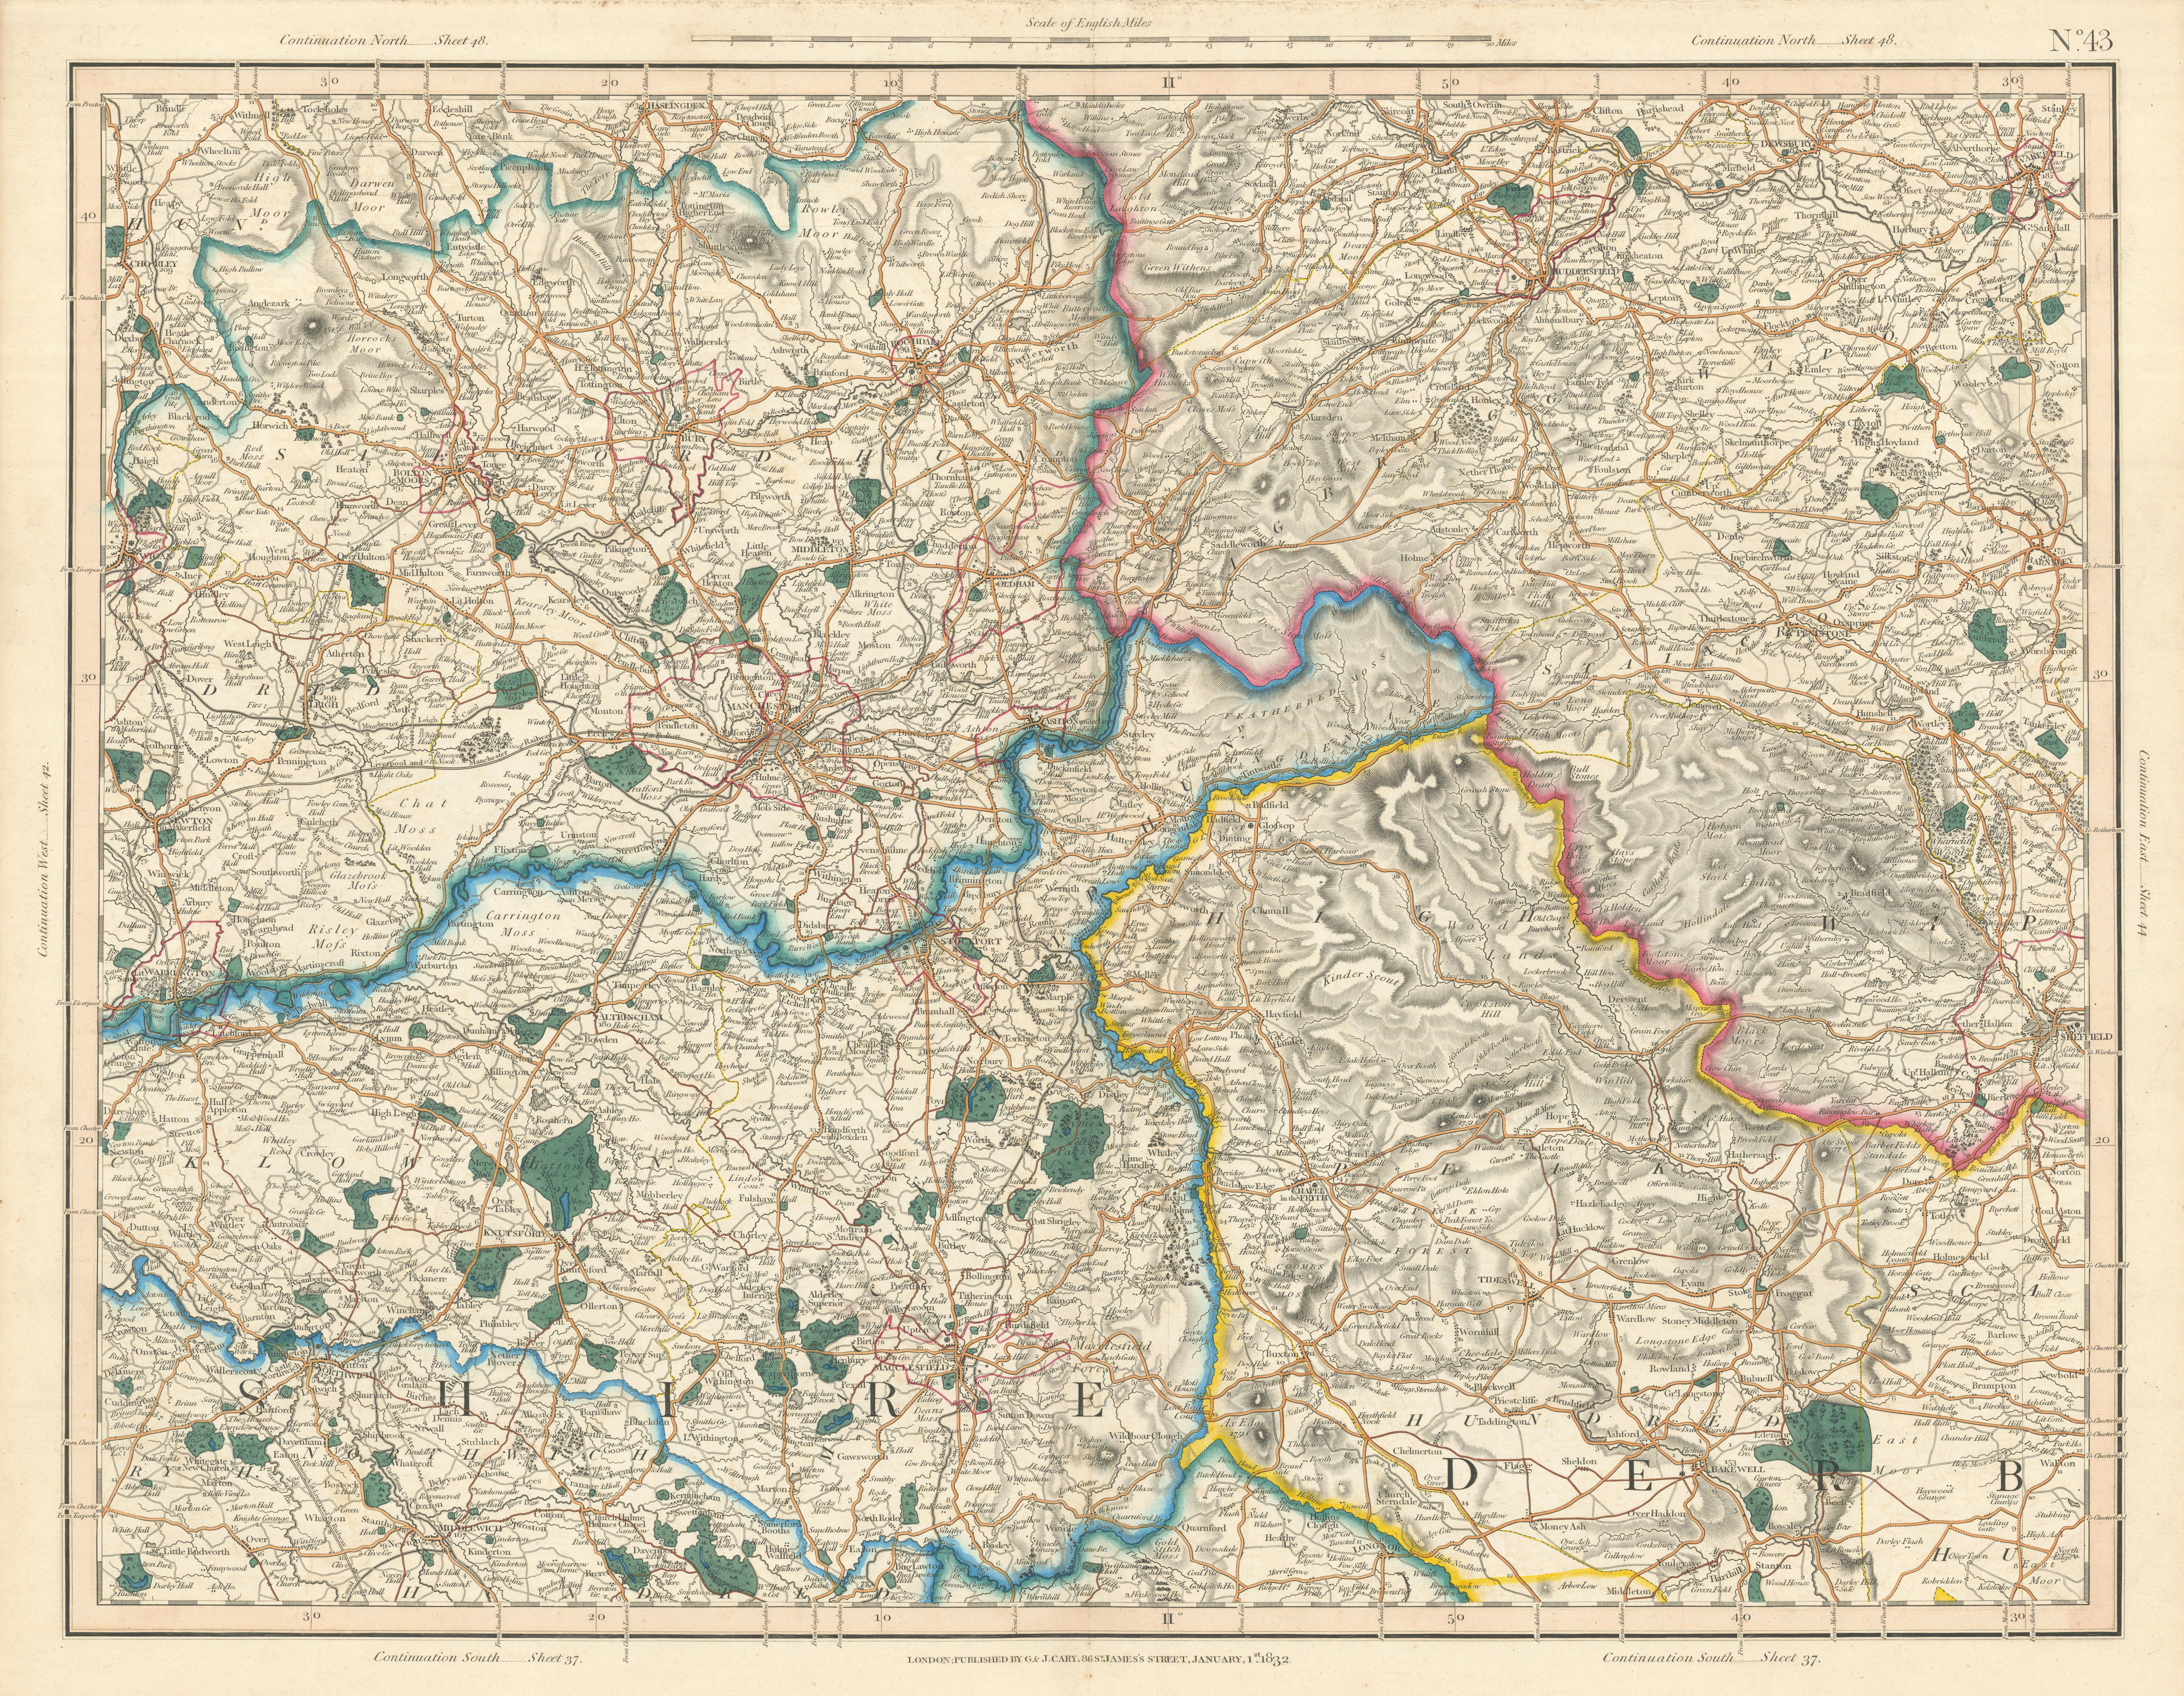 Lancashire city | plans Manchester & Lancashire maps, county road maps, art Liverpool prints & old Antique vintage